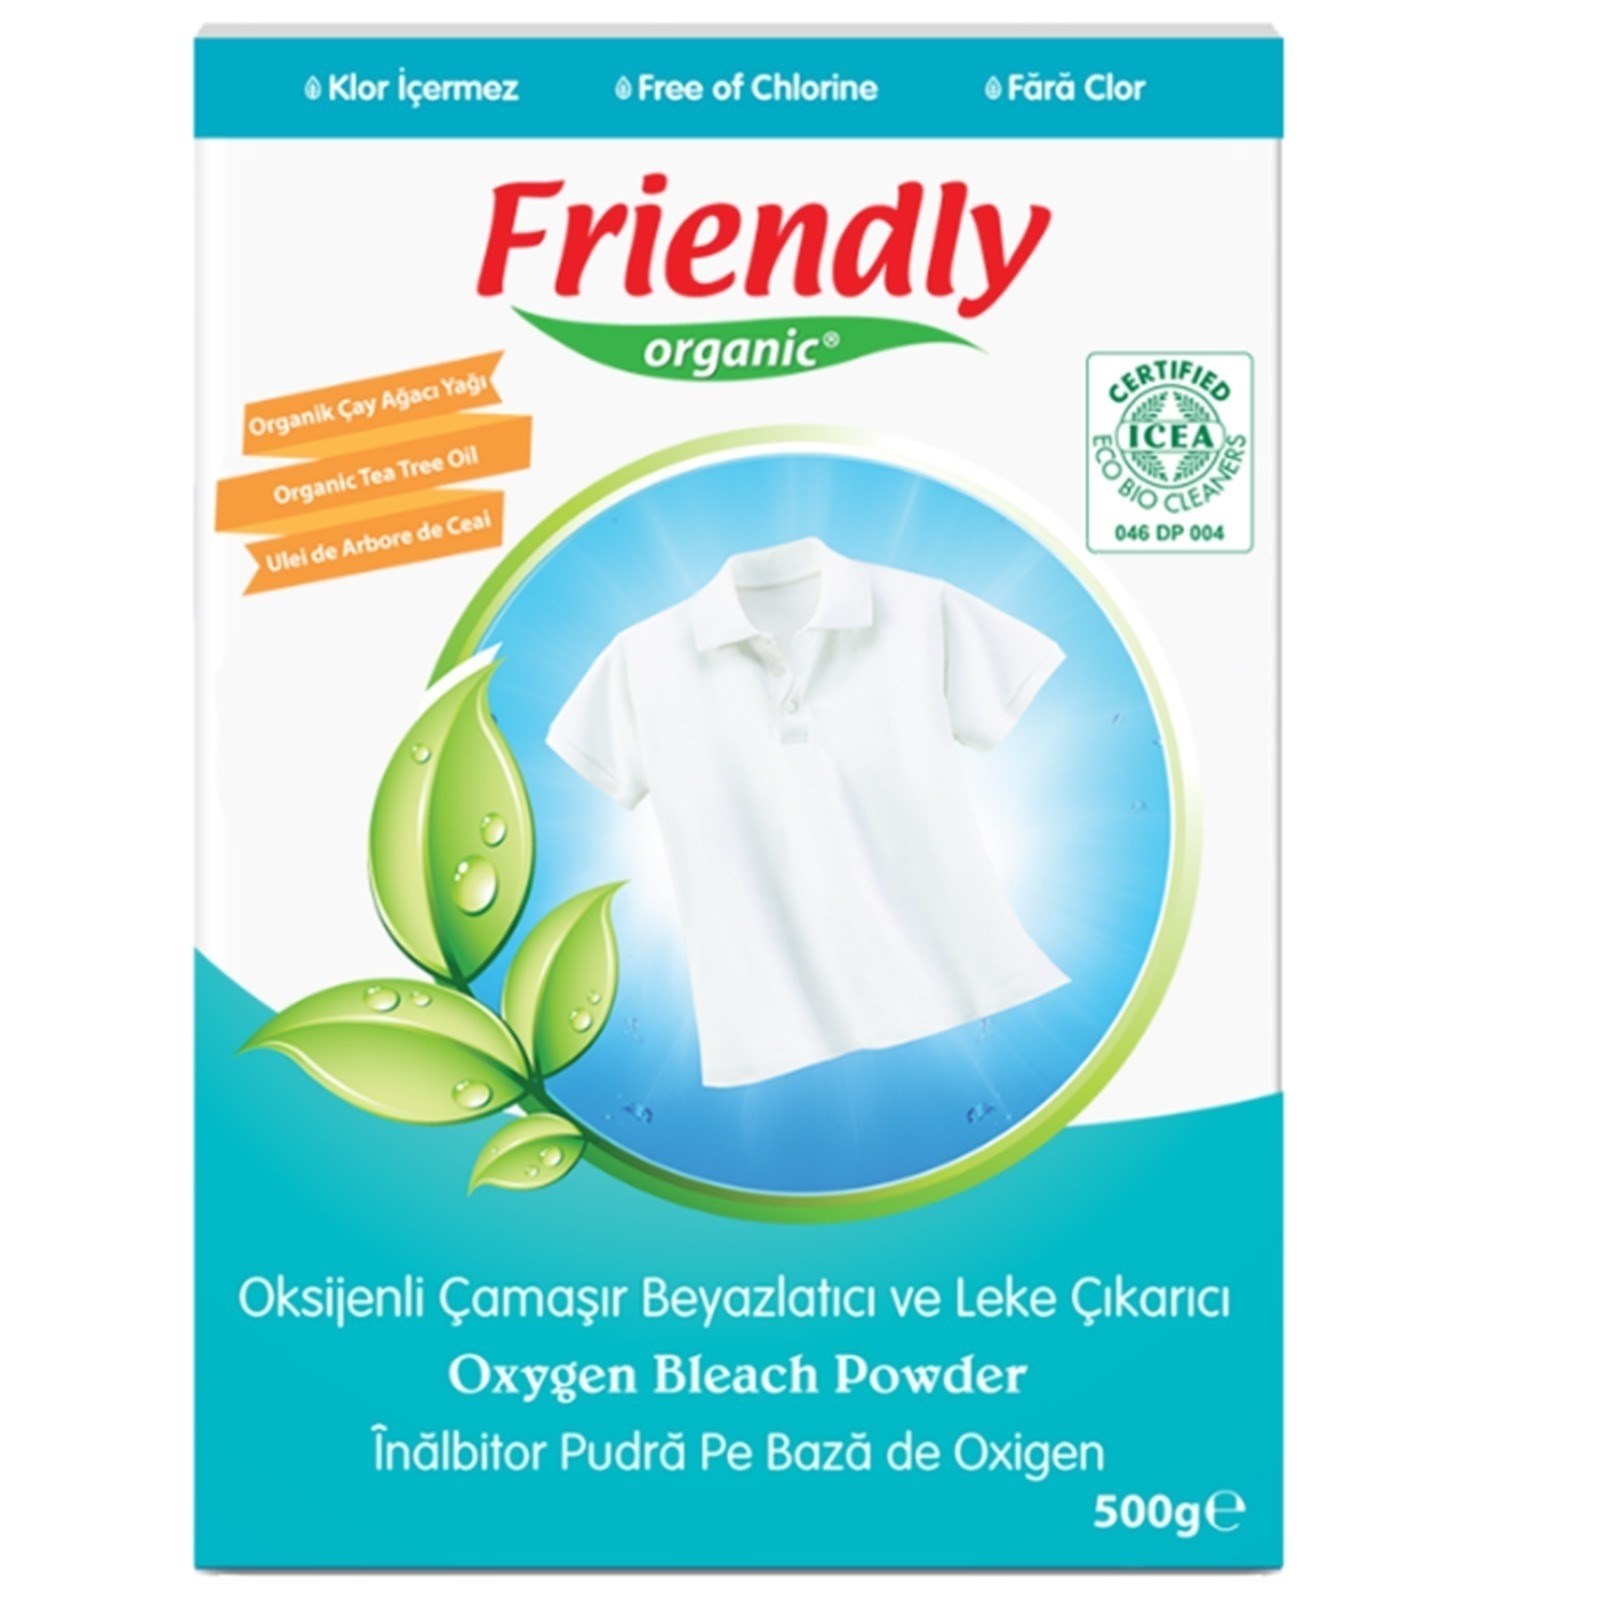 Friendly Organik Oksijenli Çamaşır Beyazlatıcı ve Leke Çıkarıcı 500 gr